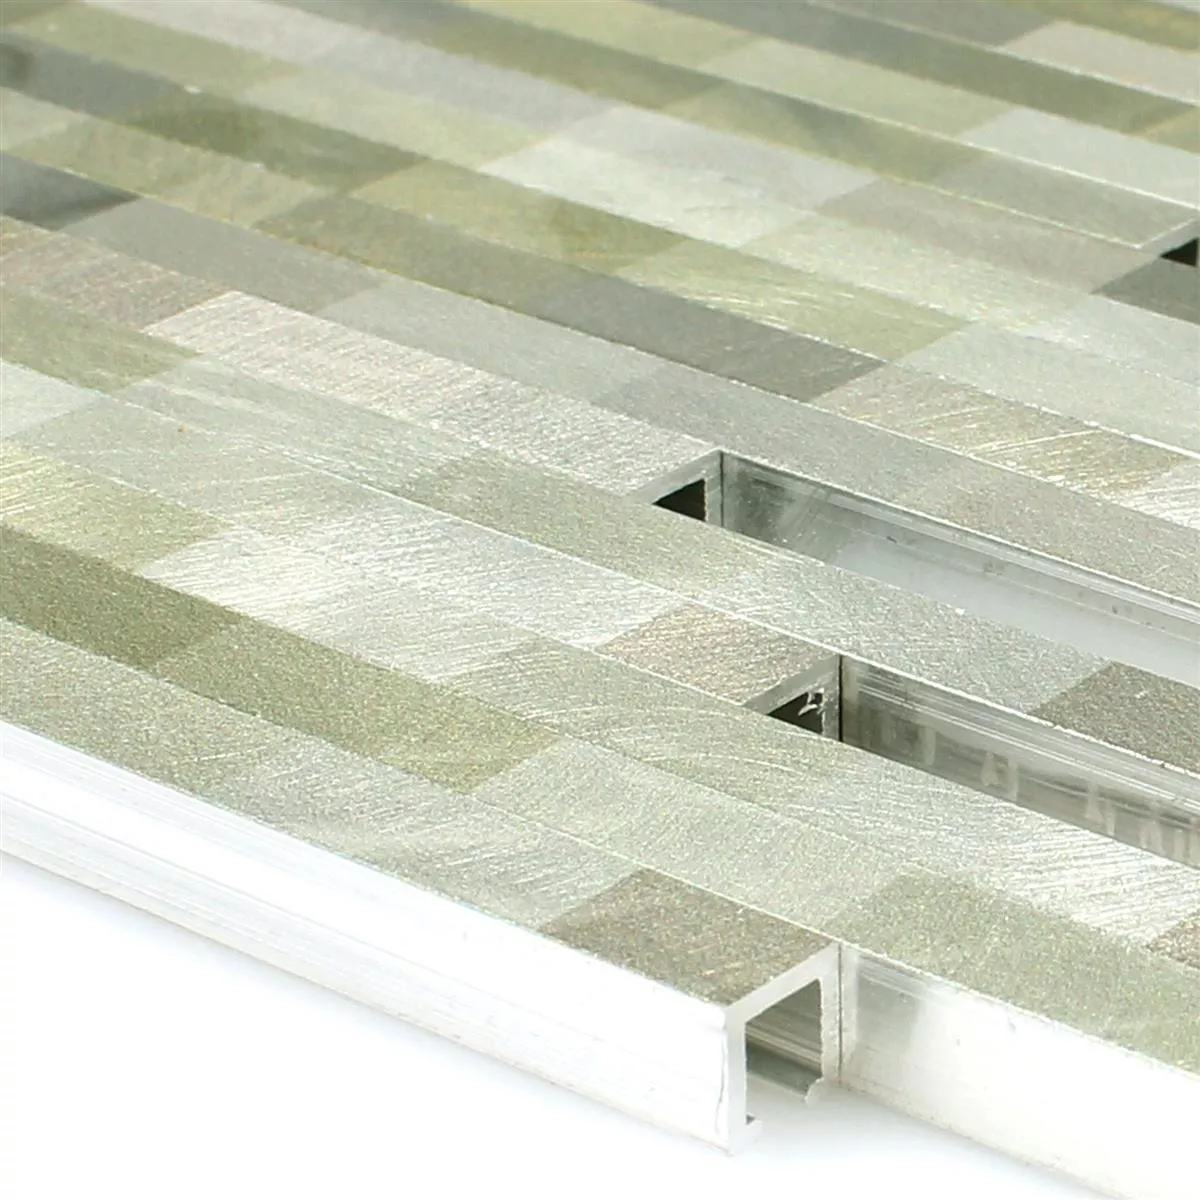 Muster von Mosaikfliesen Aluminium Wishbone Grün Silber